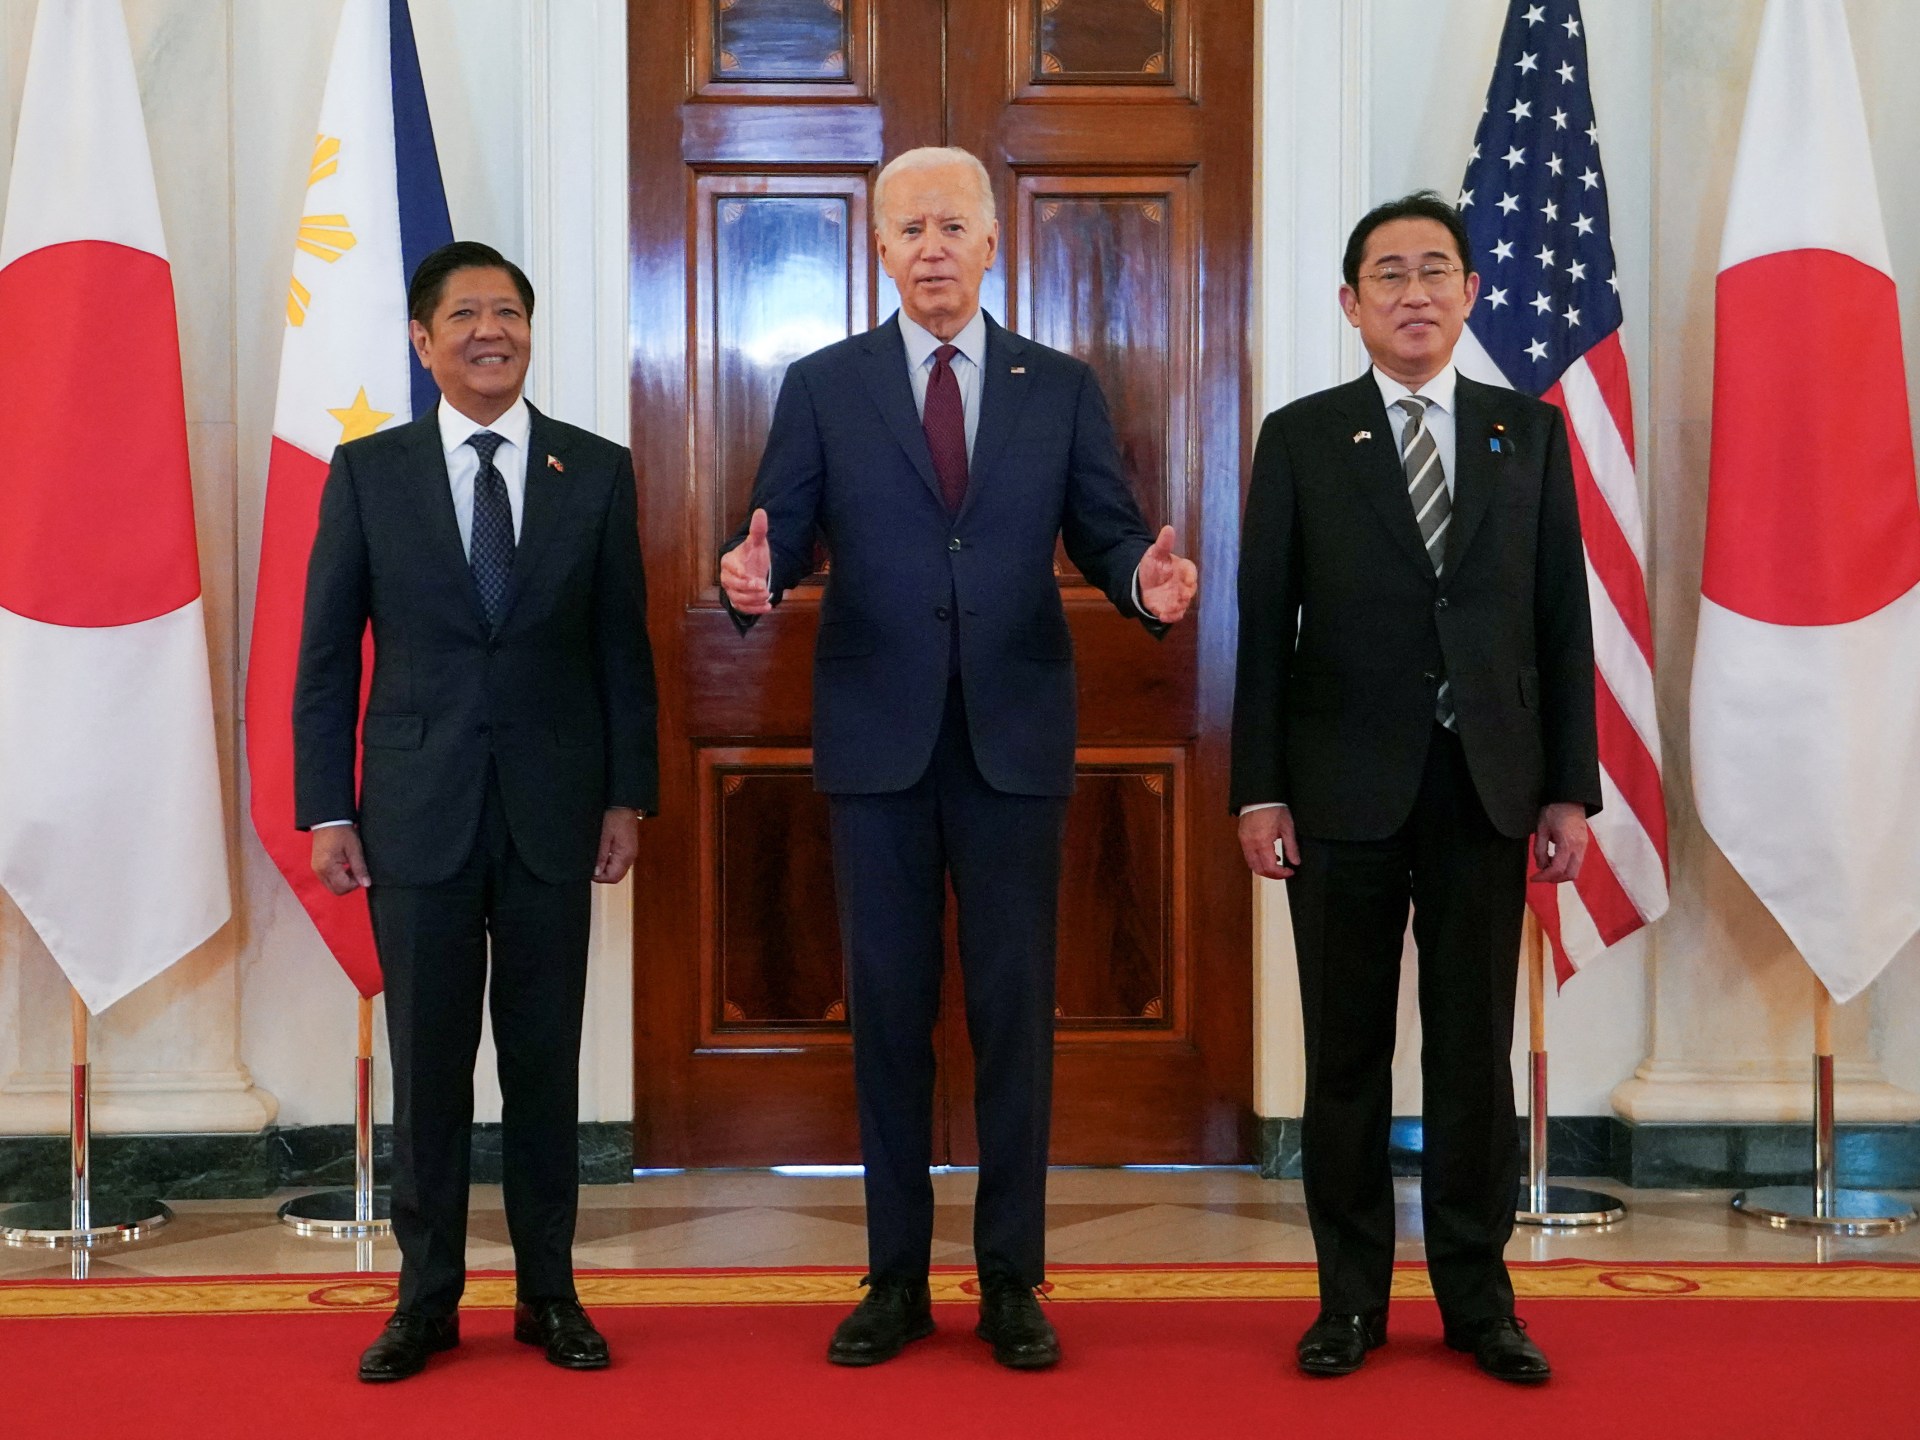 بايدن يلتقي رئيس الفلبين ويحذر الصين | أخبار – البوكس نيوز